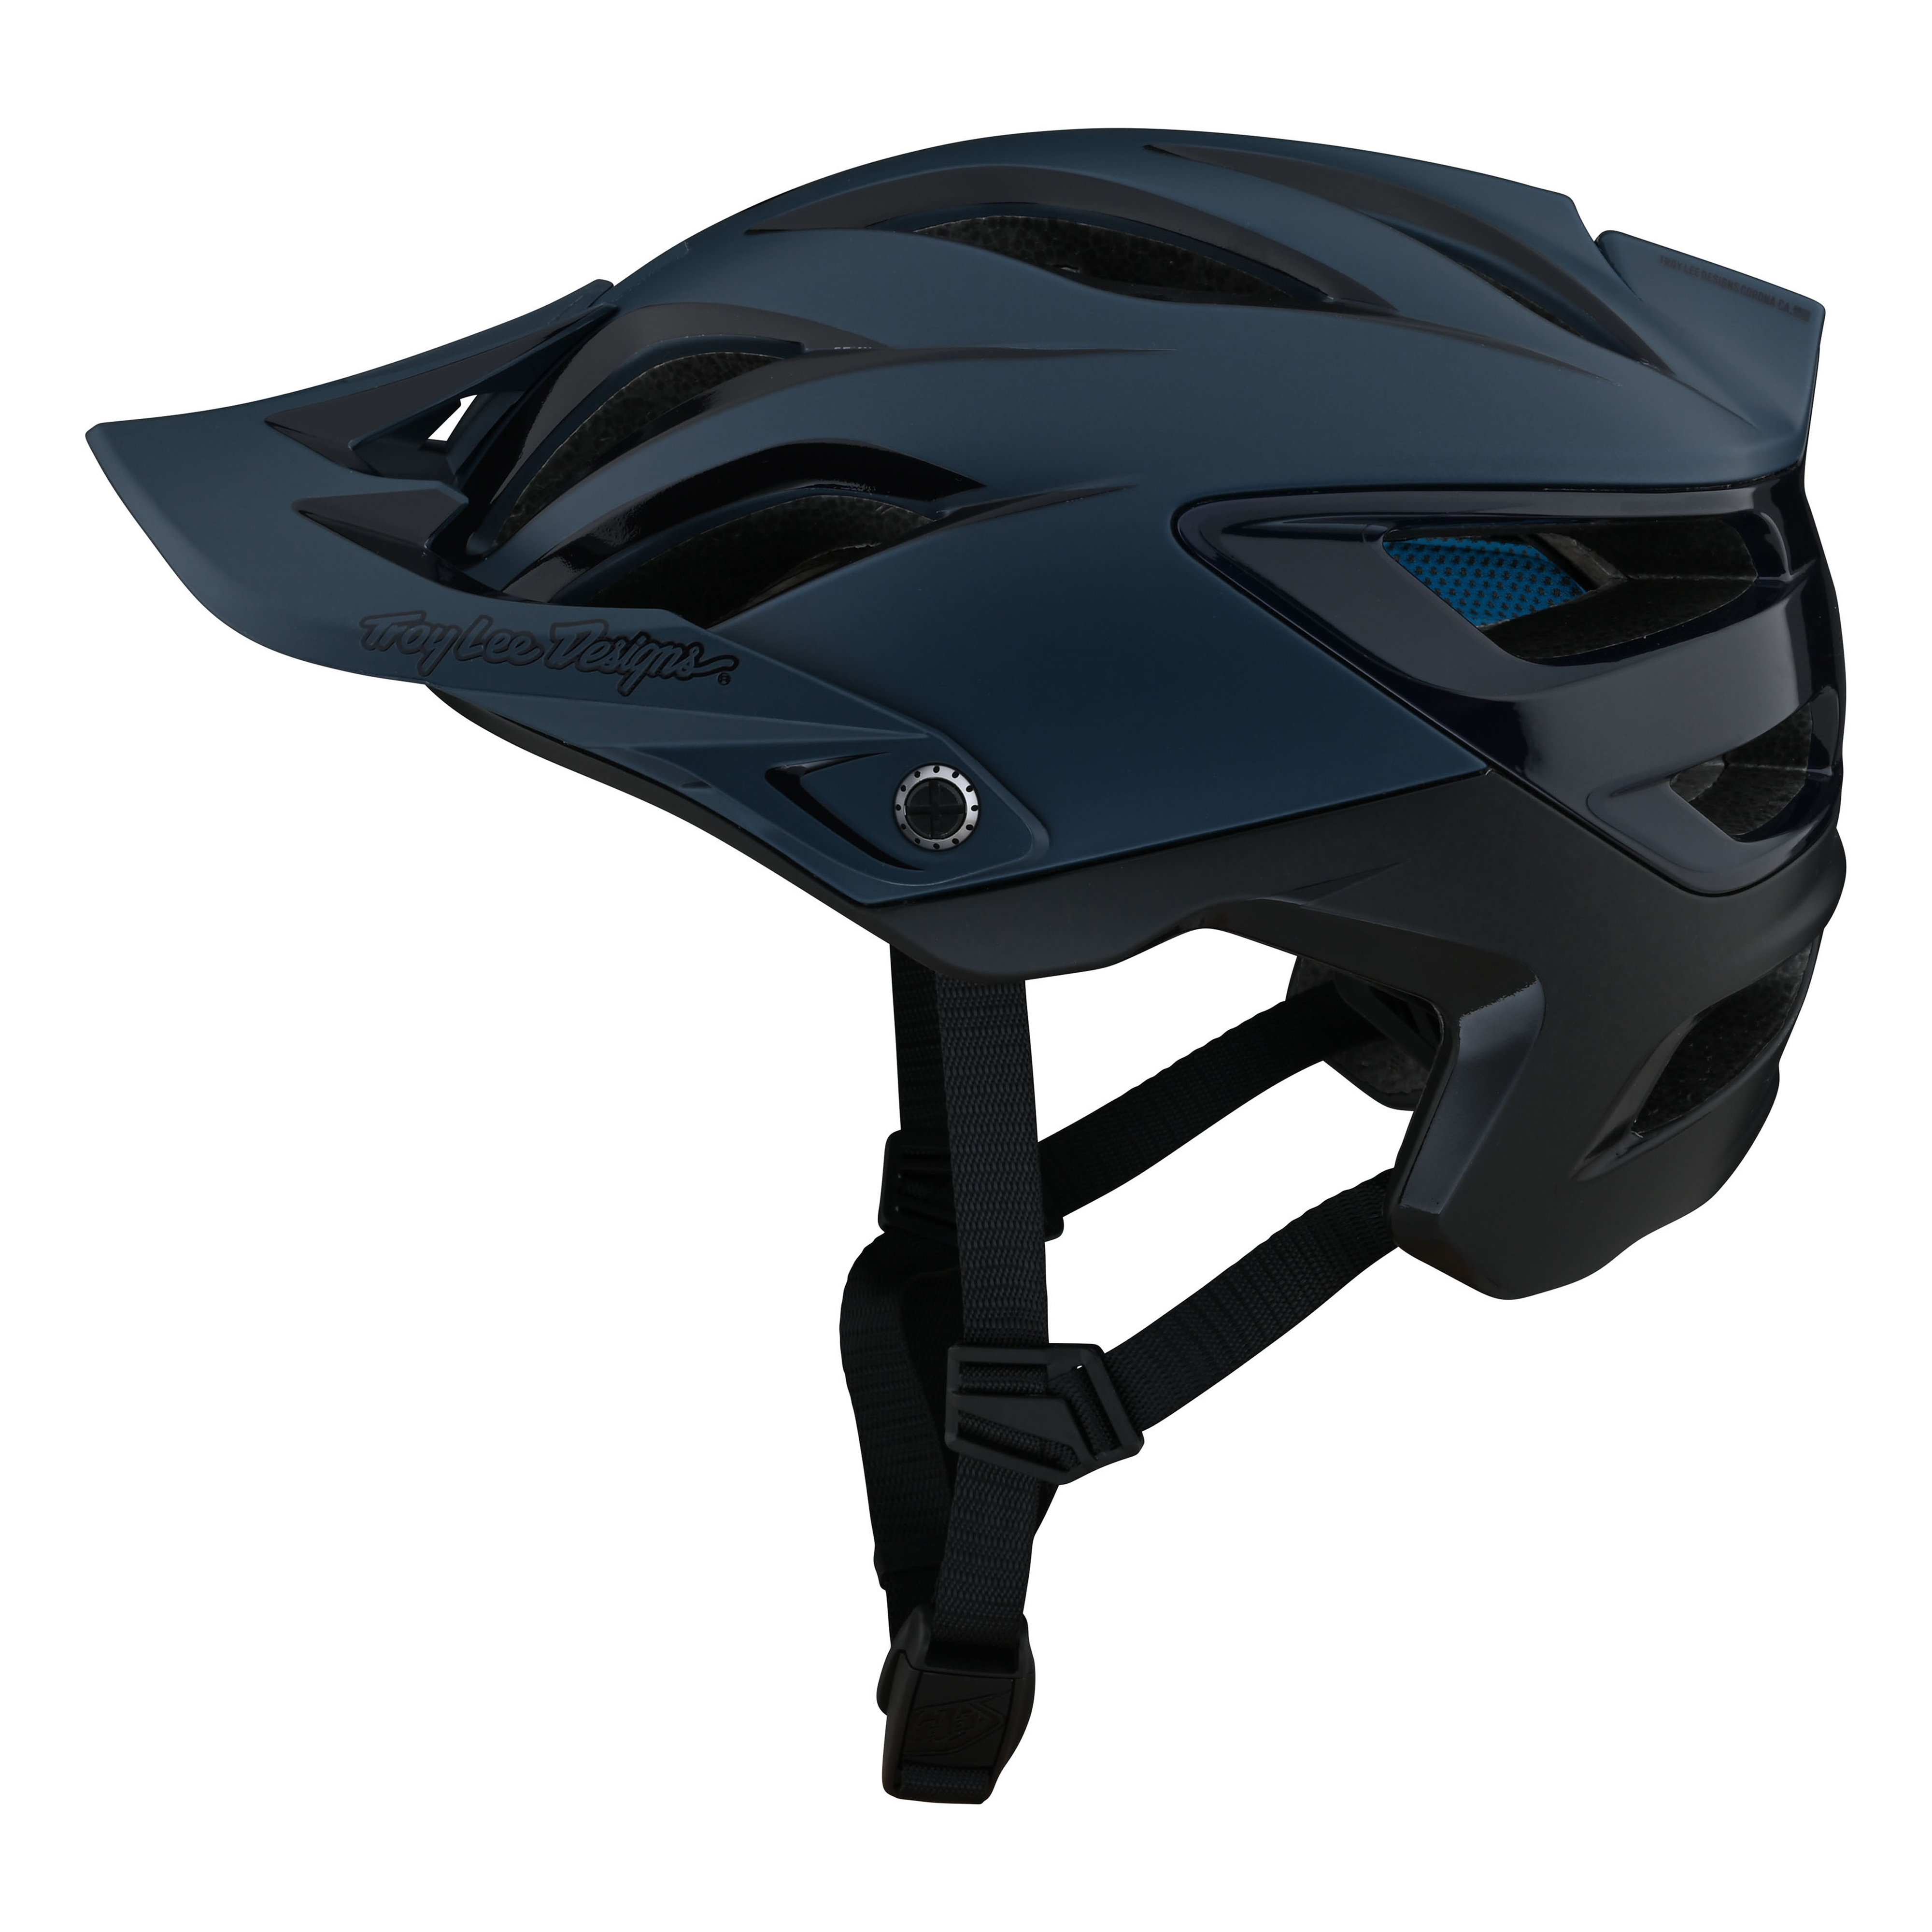 트로이리디자인 A3 MIPS 헬멧 (우노 슬레이트 블루)